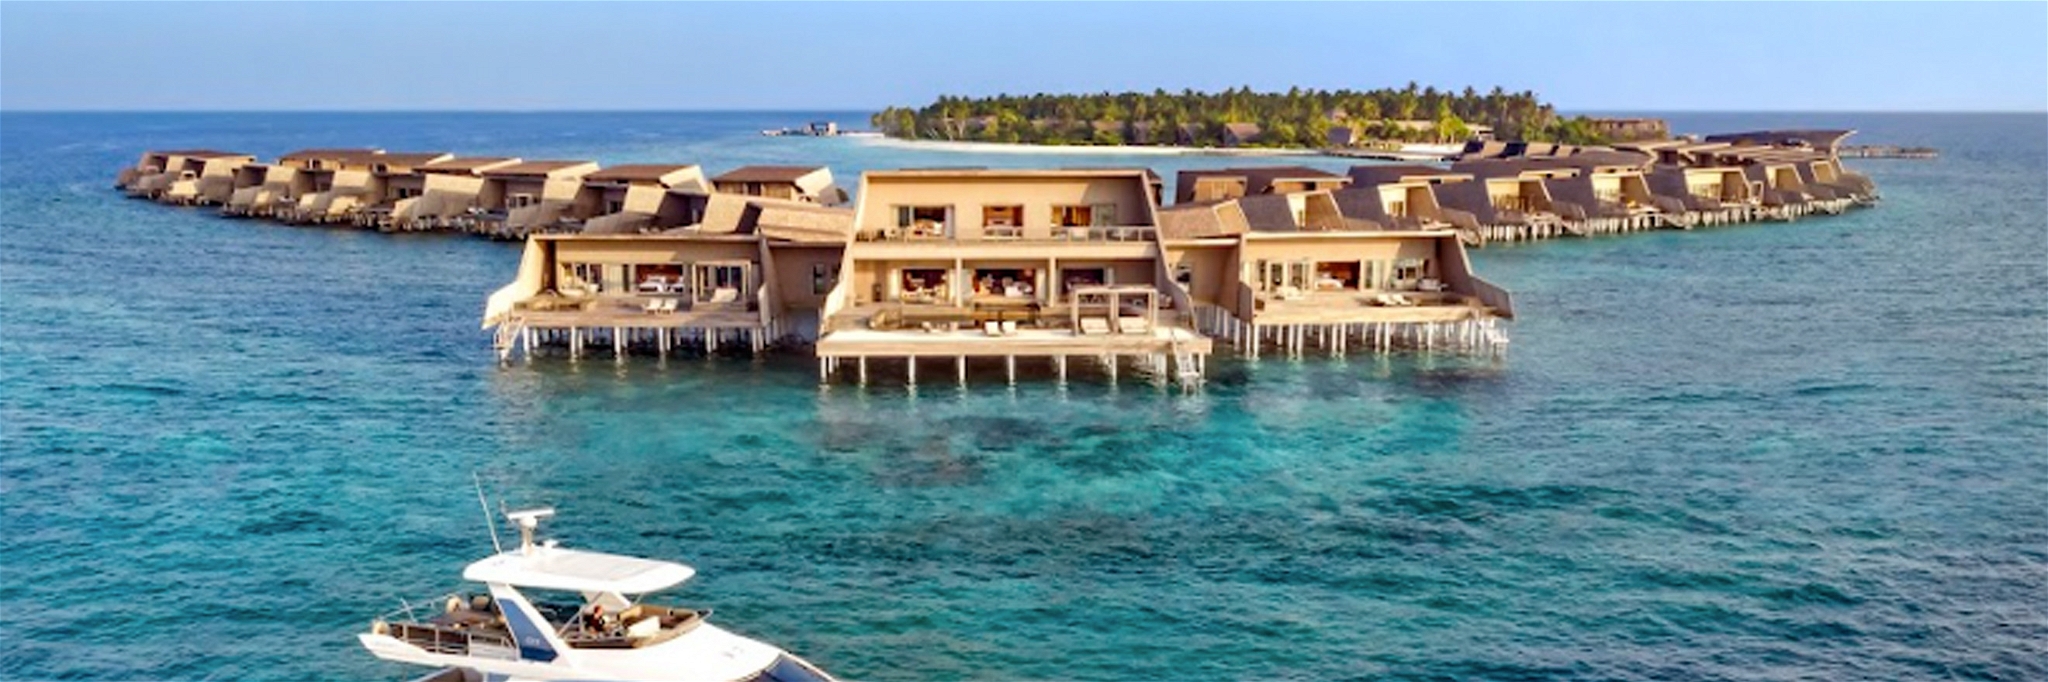 Luxuriöse »Robinson-Crusoe-Träume« können im Edel-Inselresort auf den Malediven Realität werden.